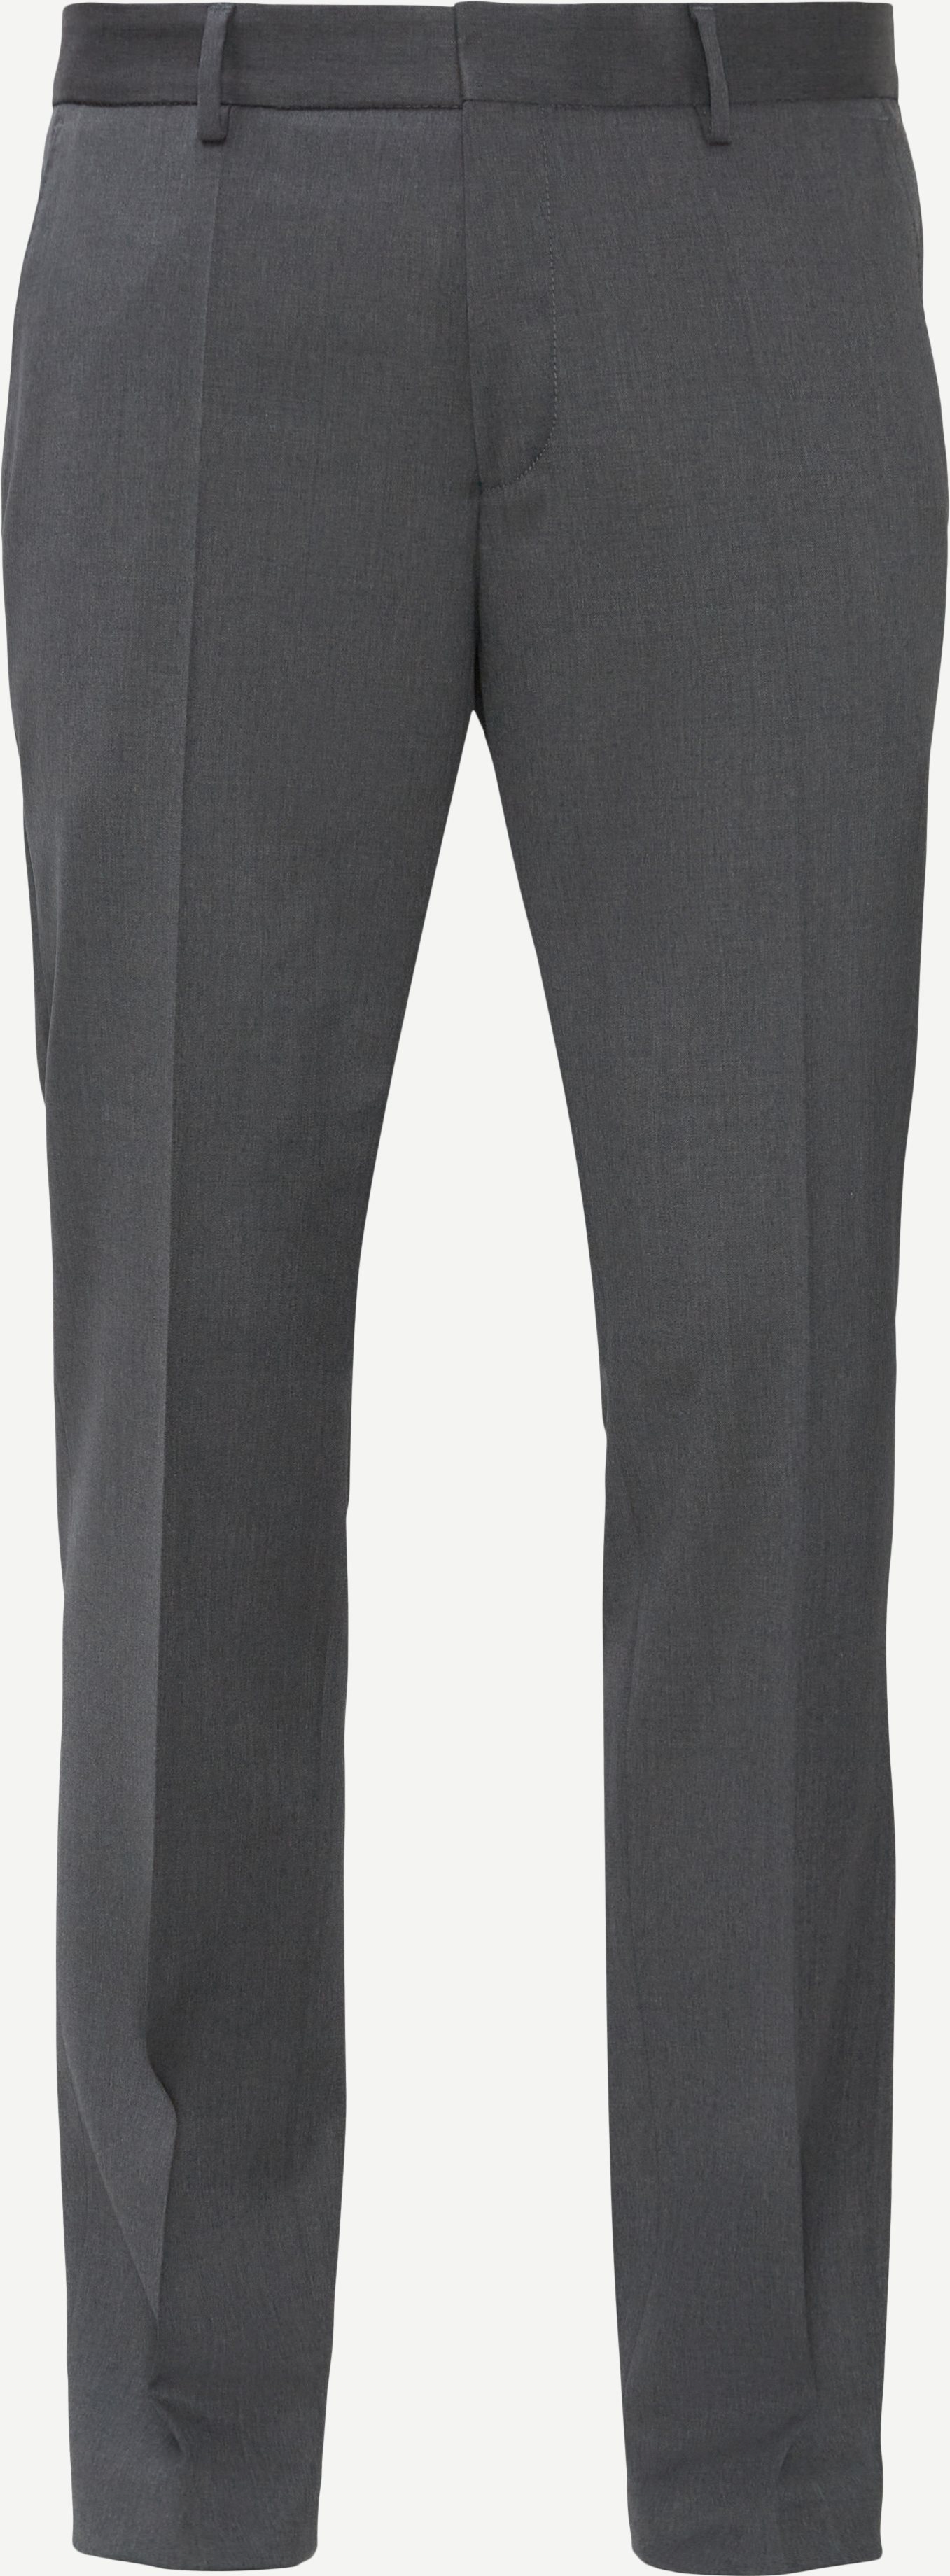 H-Genius-B1 Trousers - Trousers - Slim fit - Grey